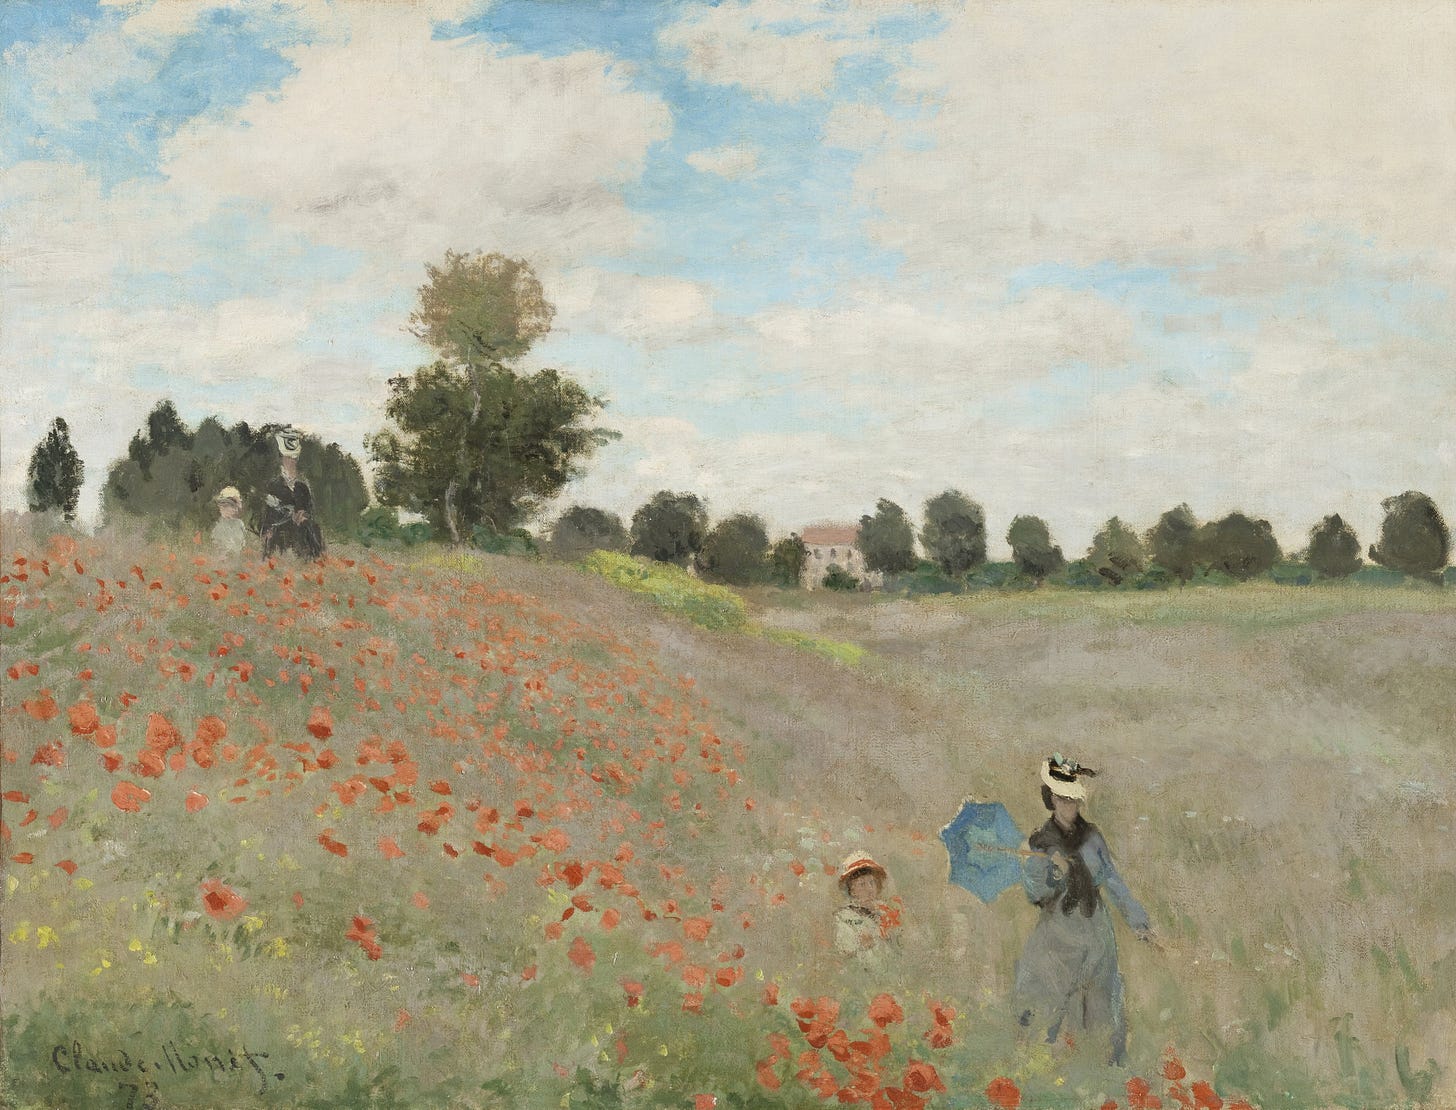 Poppy Field (1881)